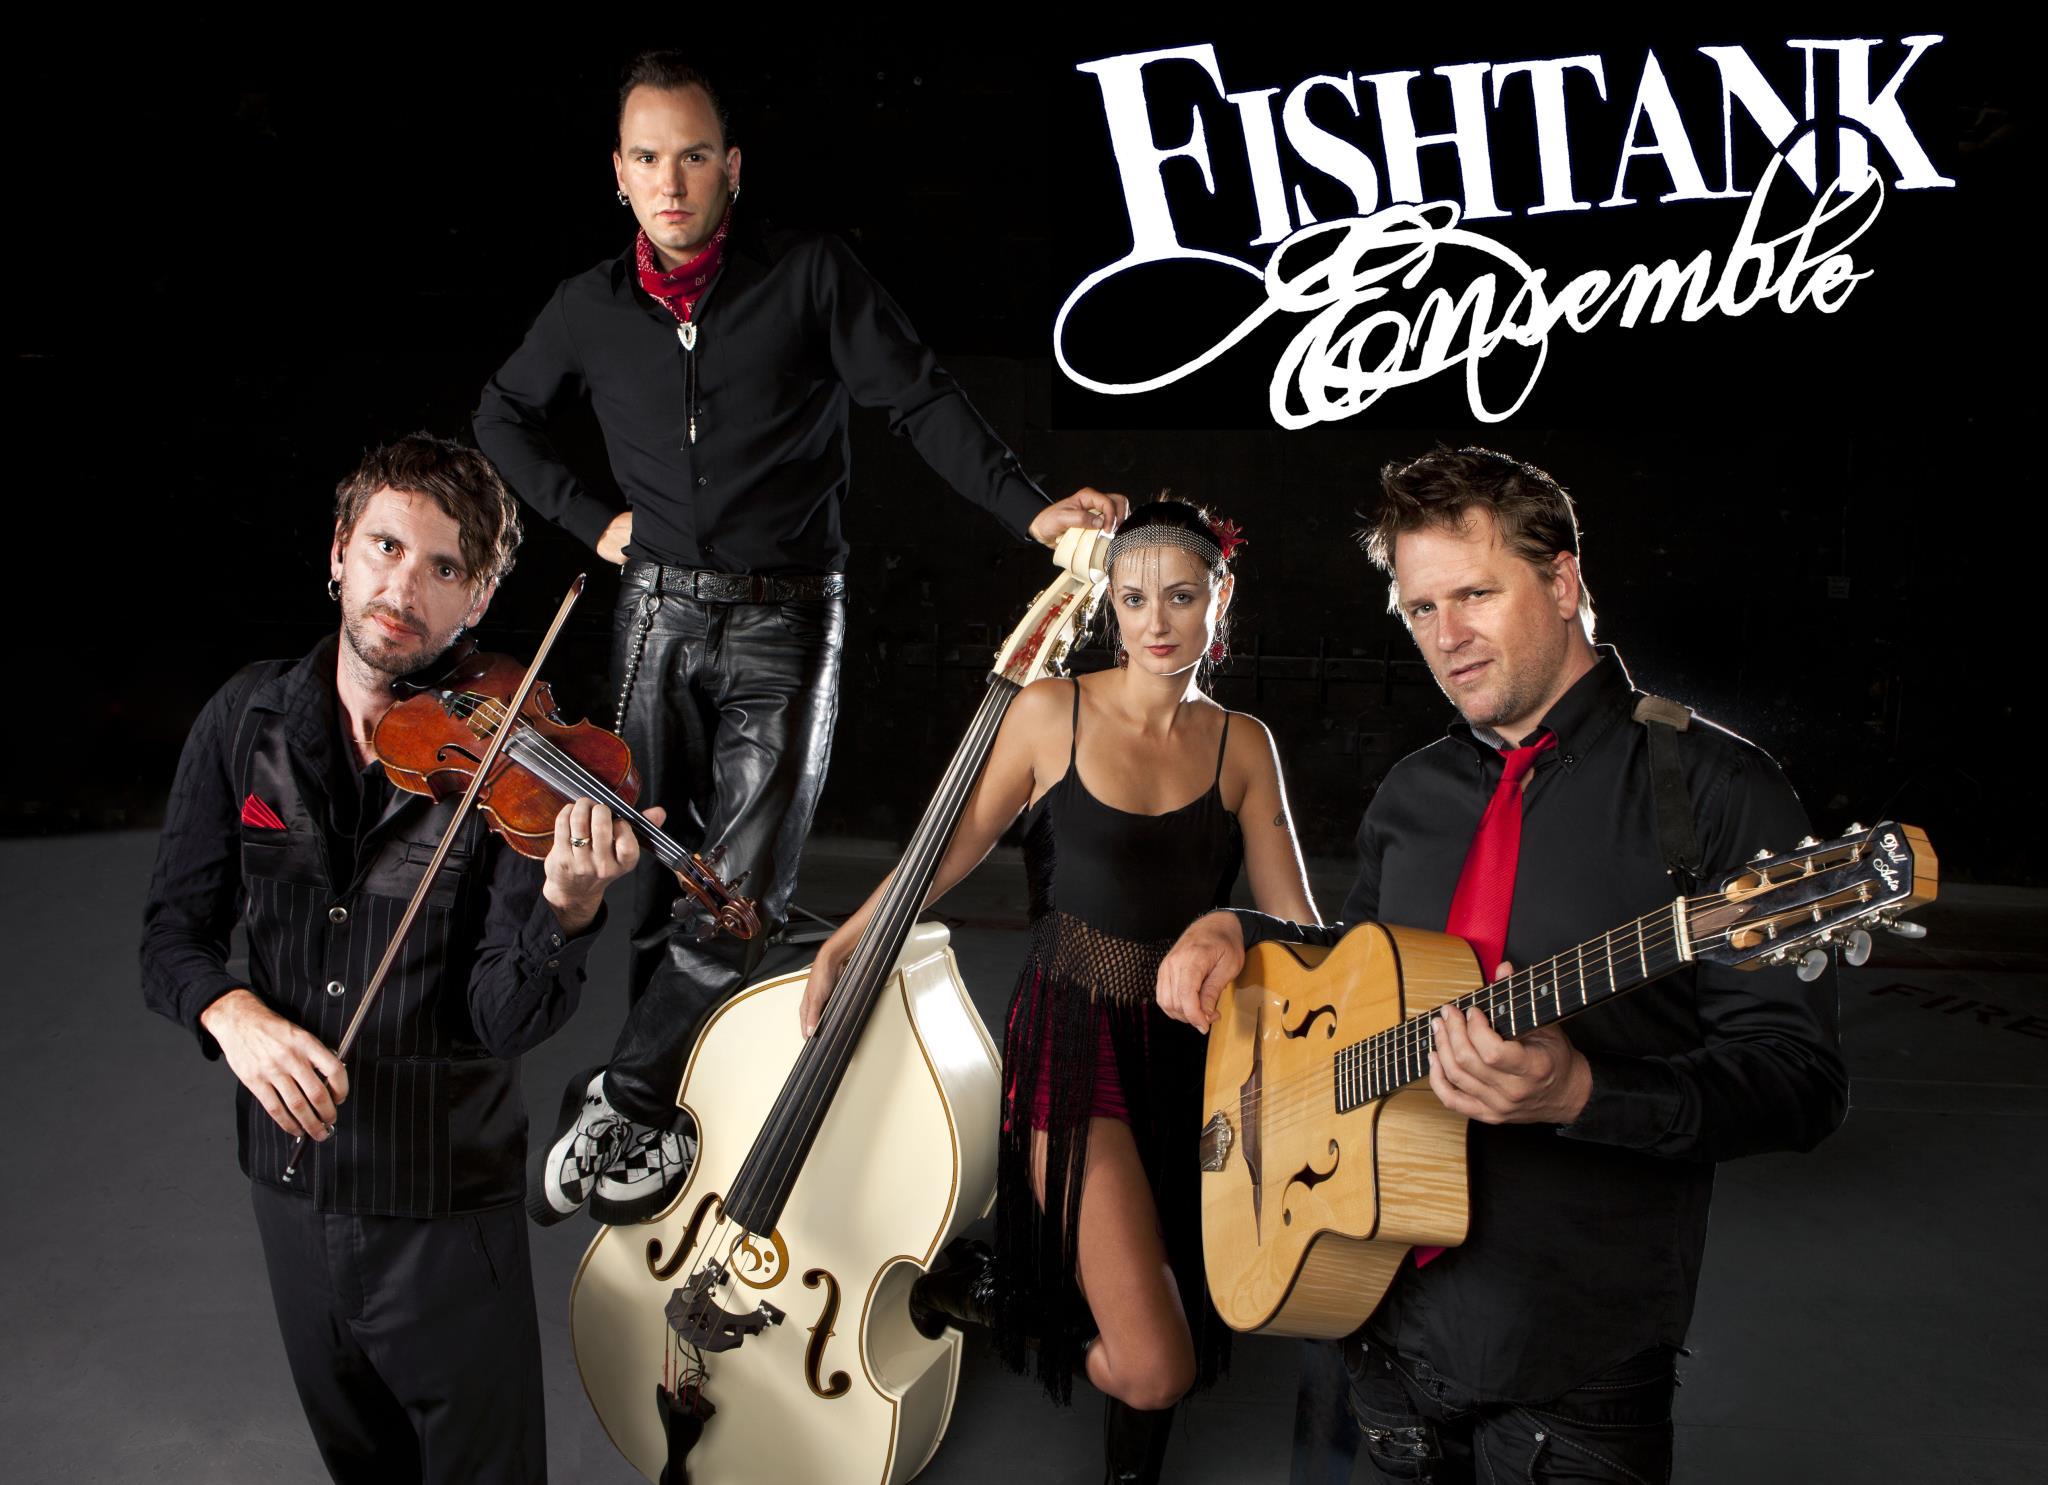 Fishtank Ensemble